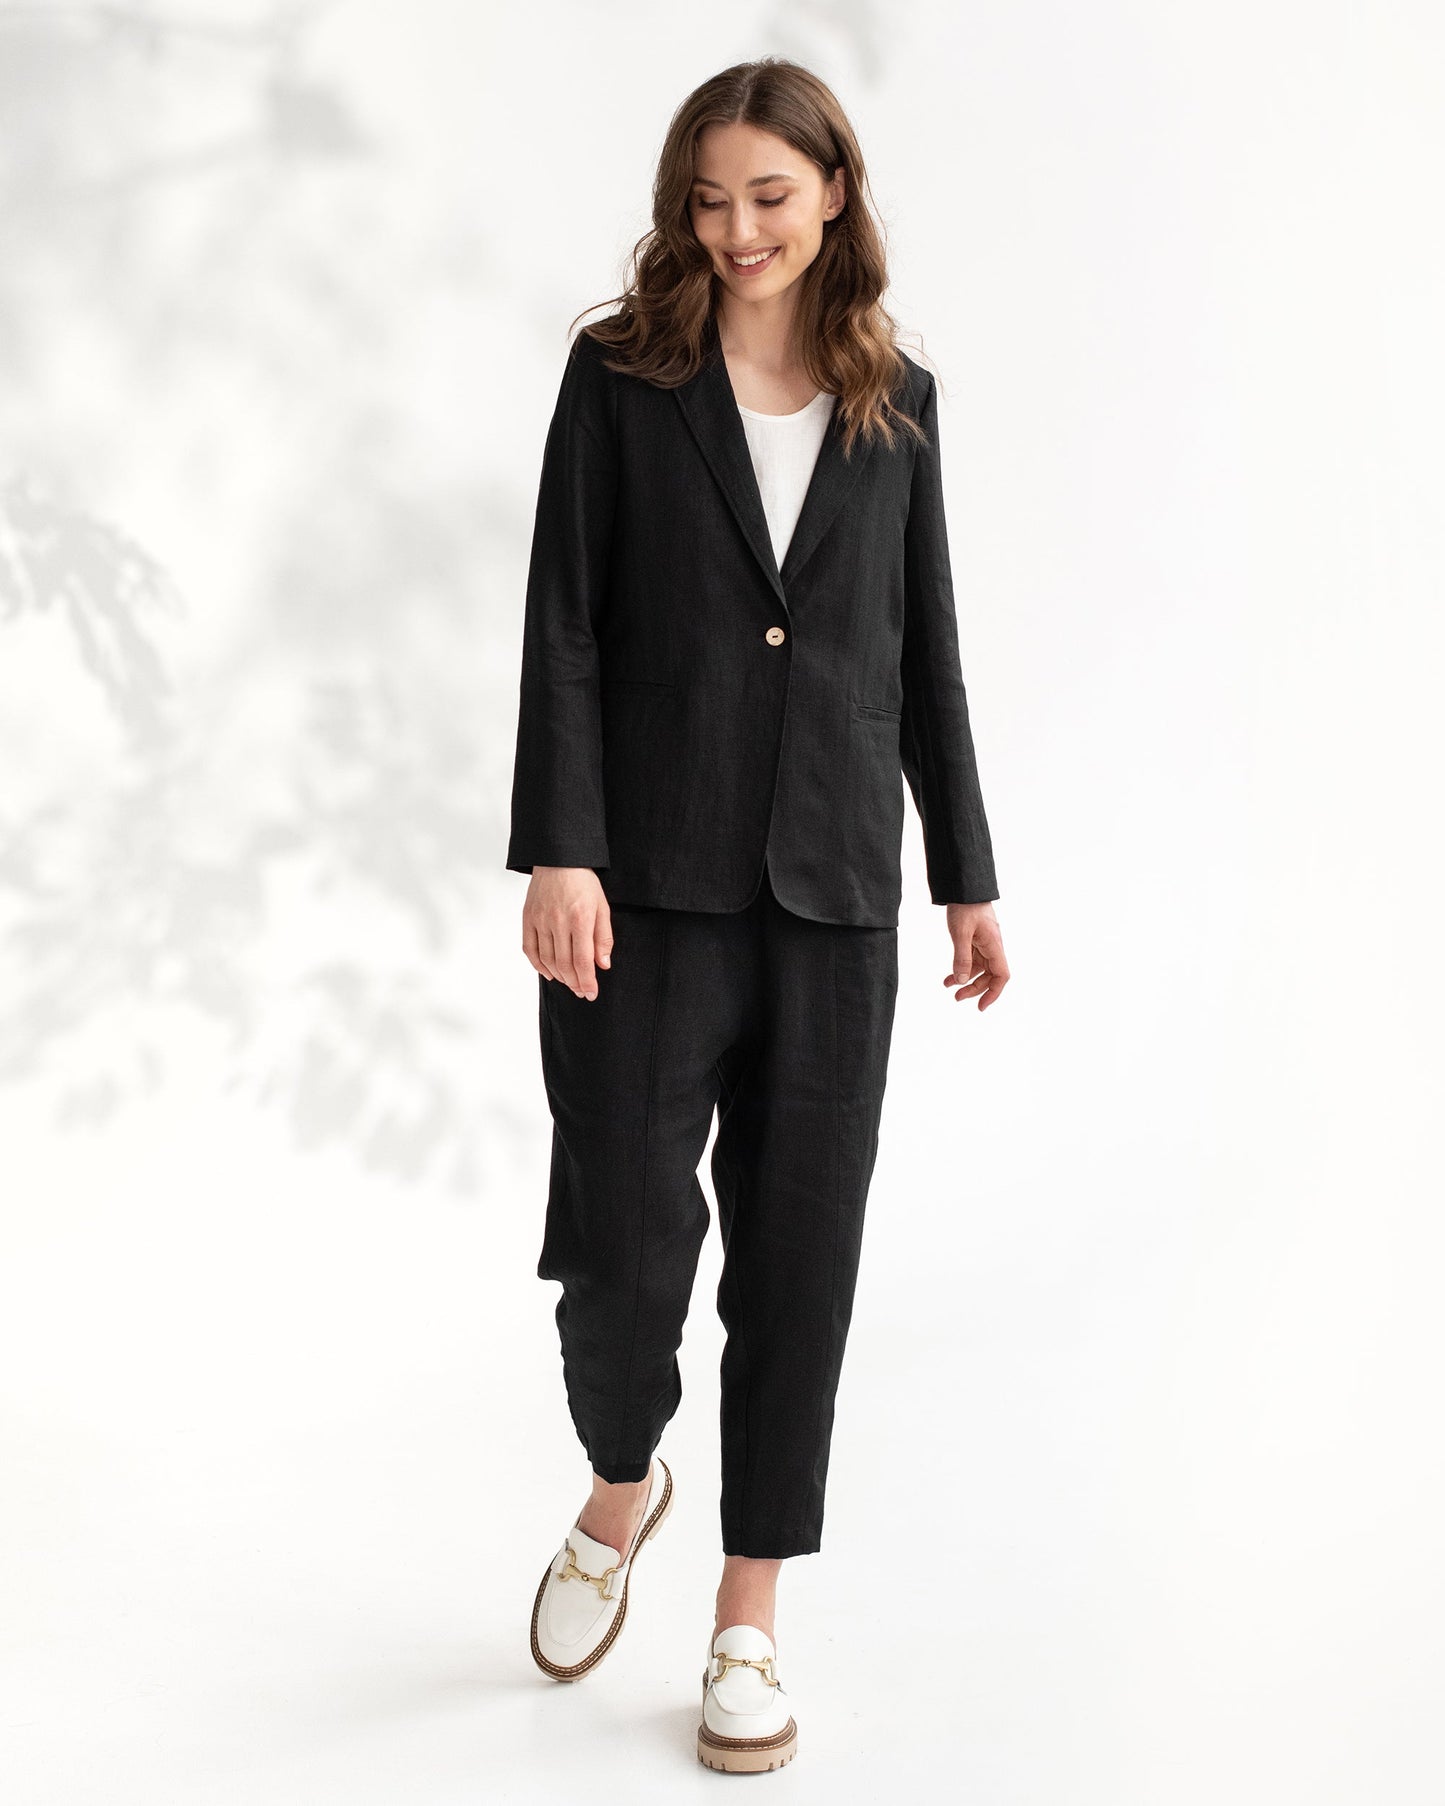 Women's linen blazer PLACID in black - MagicLinen